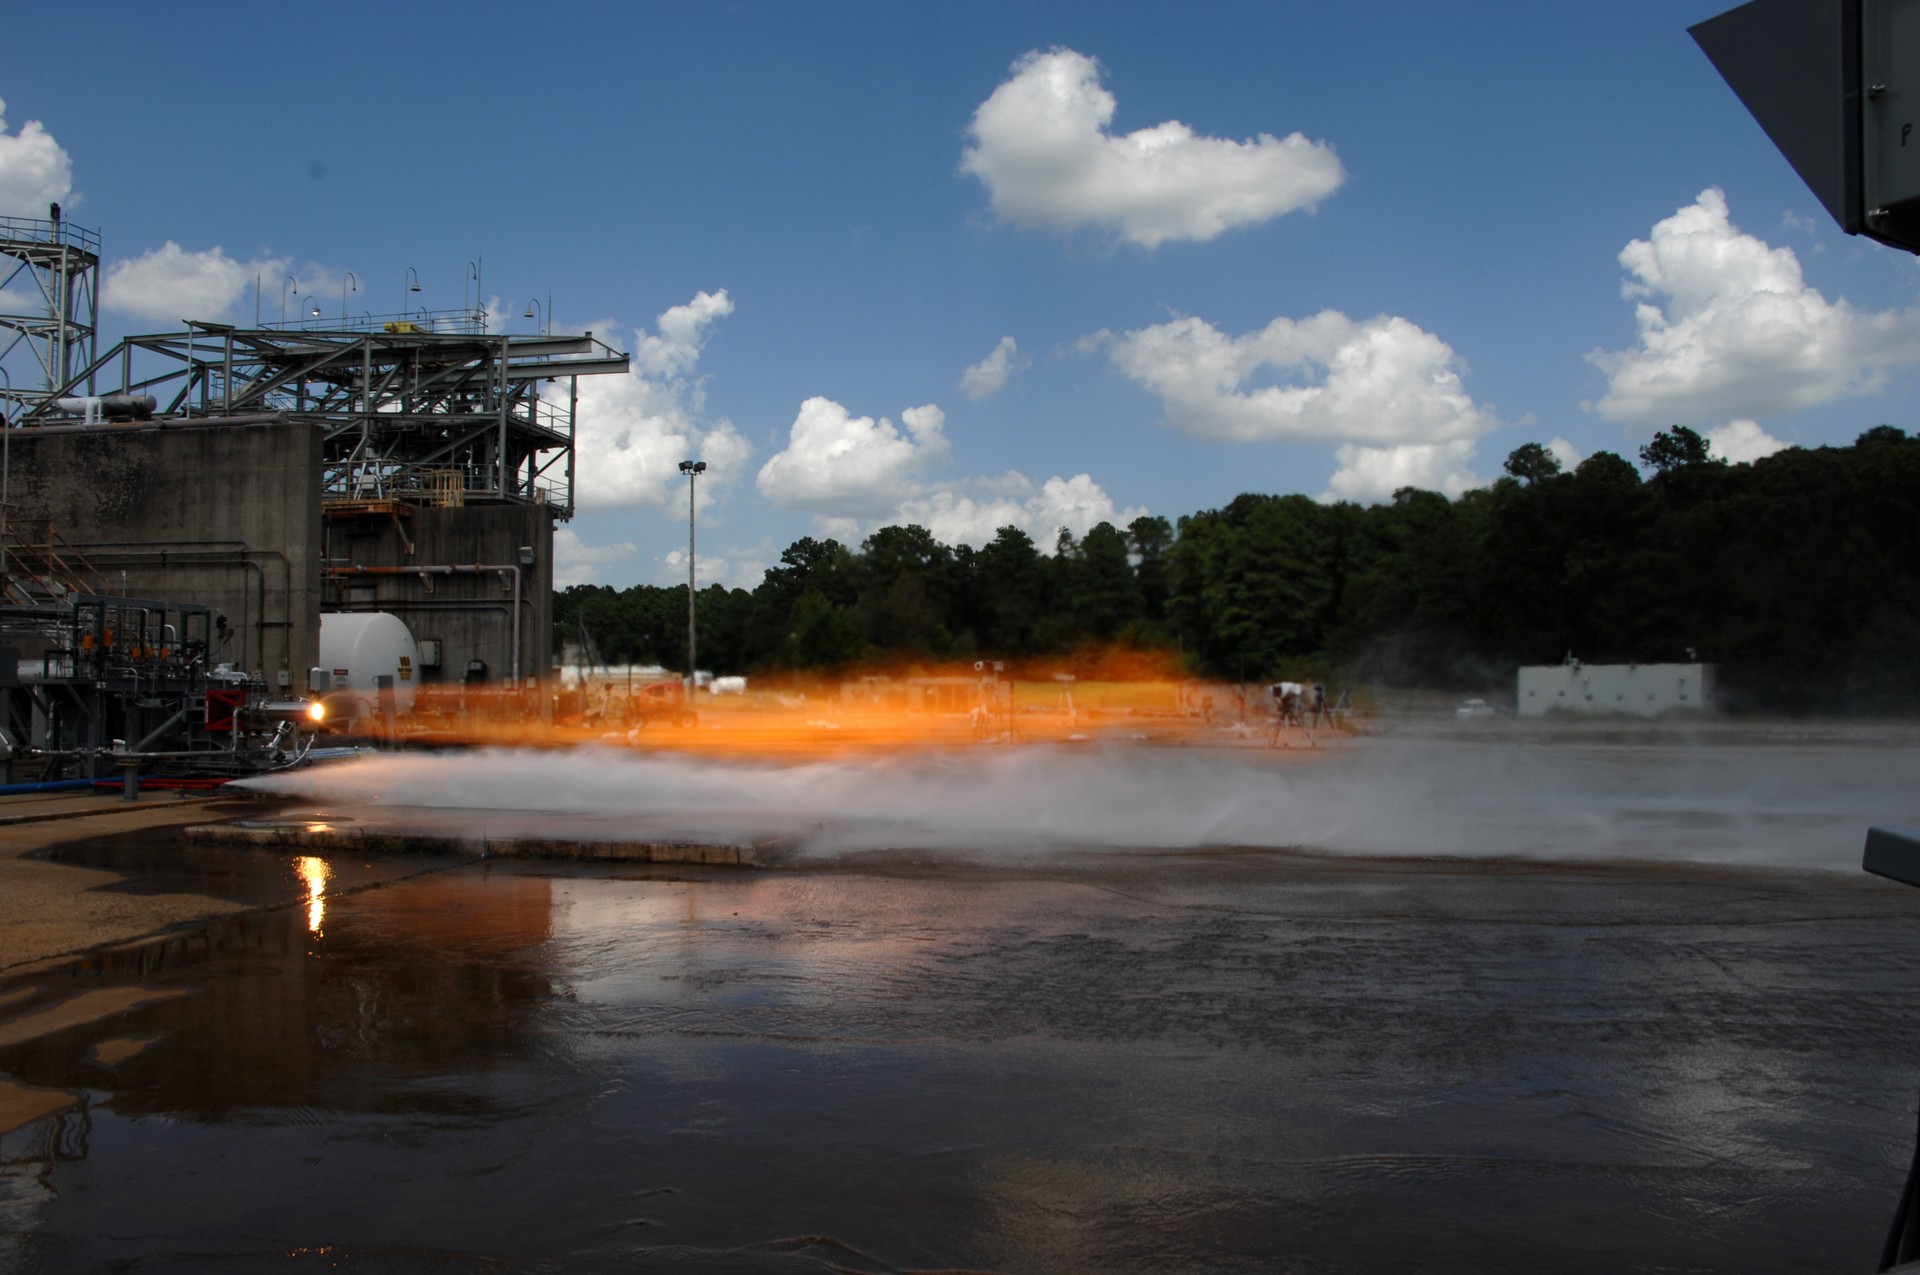 Injetores foram testados por cinco segundos: equipamentos produziram 9 toneladas de propulsor (Foto: NASA photo/David Olive)